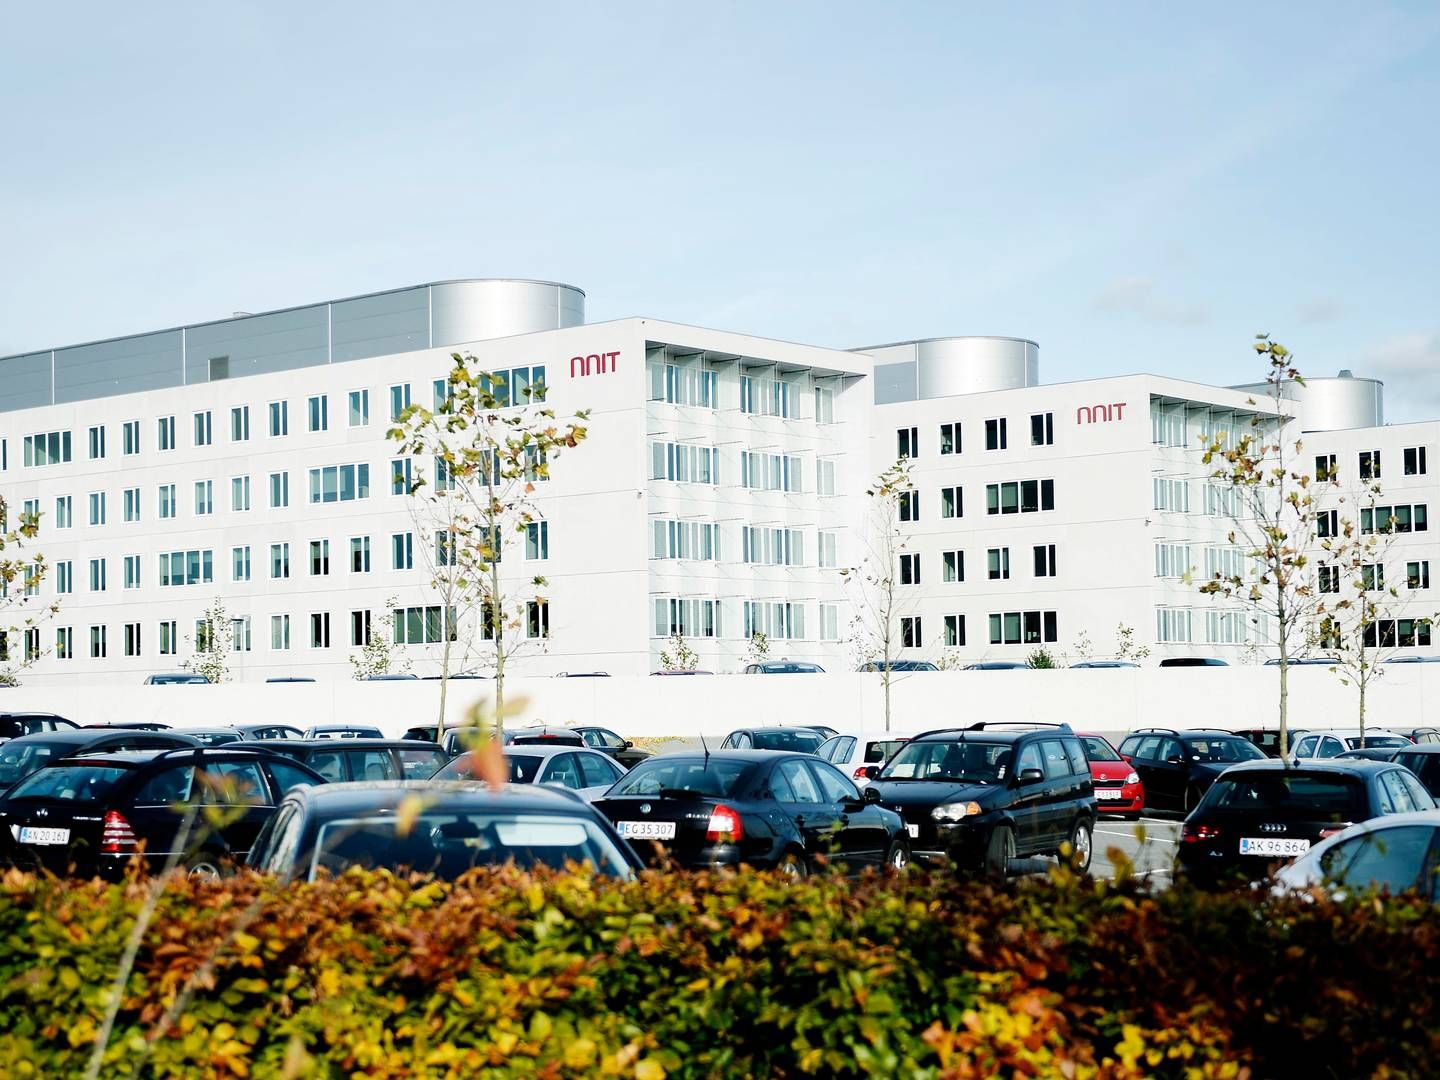 NNIT's hovedkvarter i Gladsaxe. | Foto: Nnit/pr